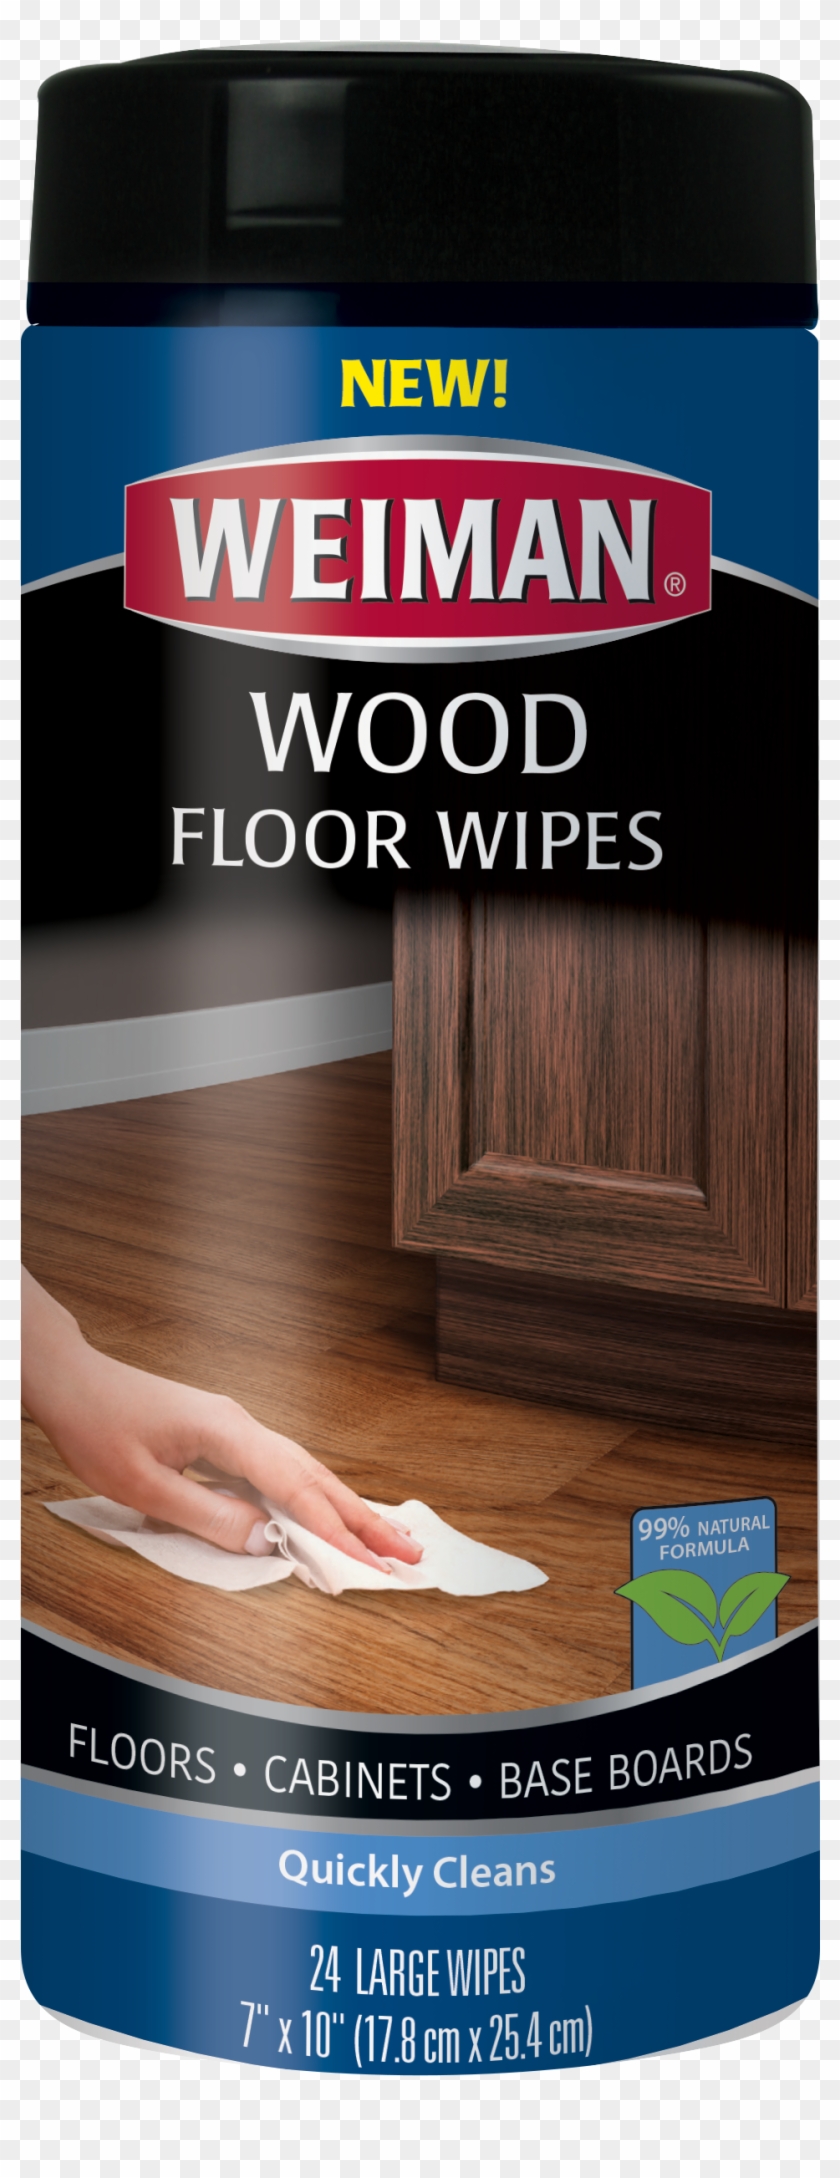 Weiman Wood Floor Wipes Hd Png Download 2494x2494 31883 Pinpng